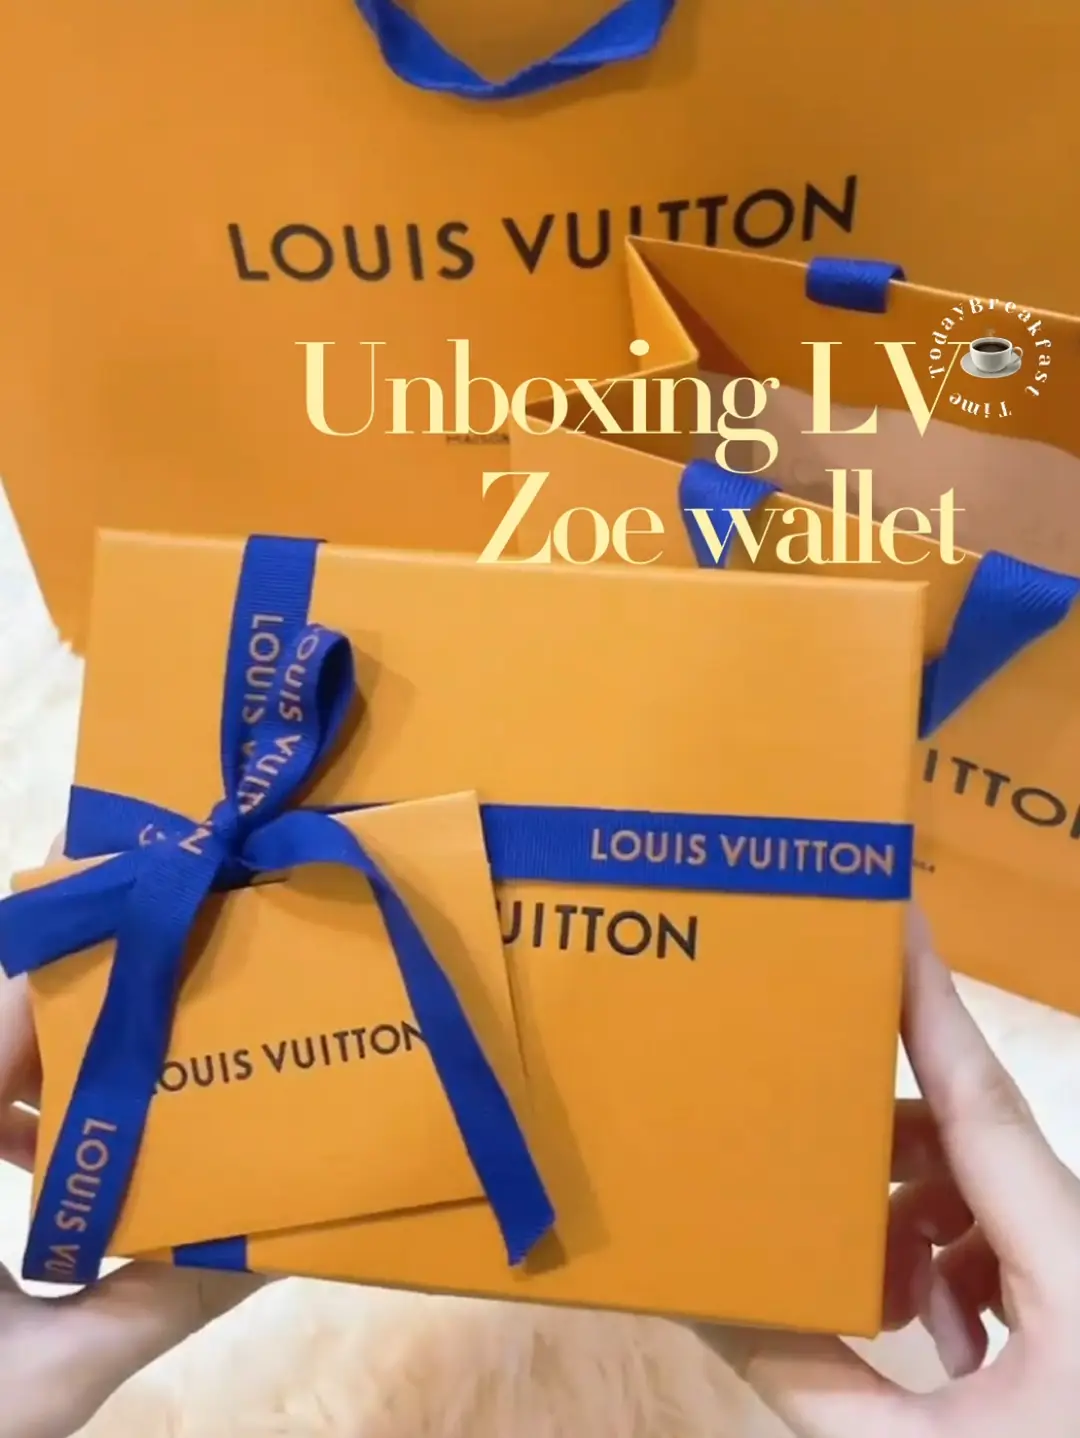 LOUIS VUITTON ZOE WALLET unboxing